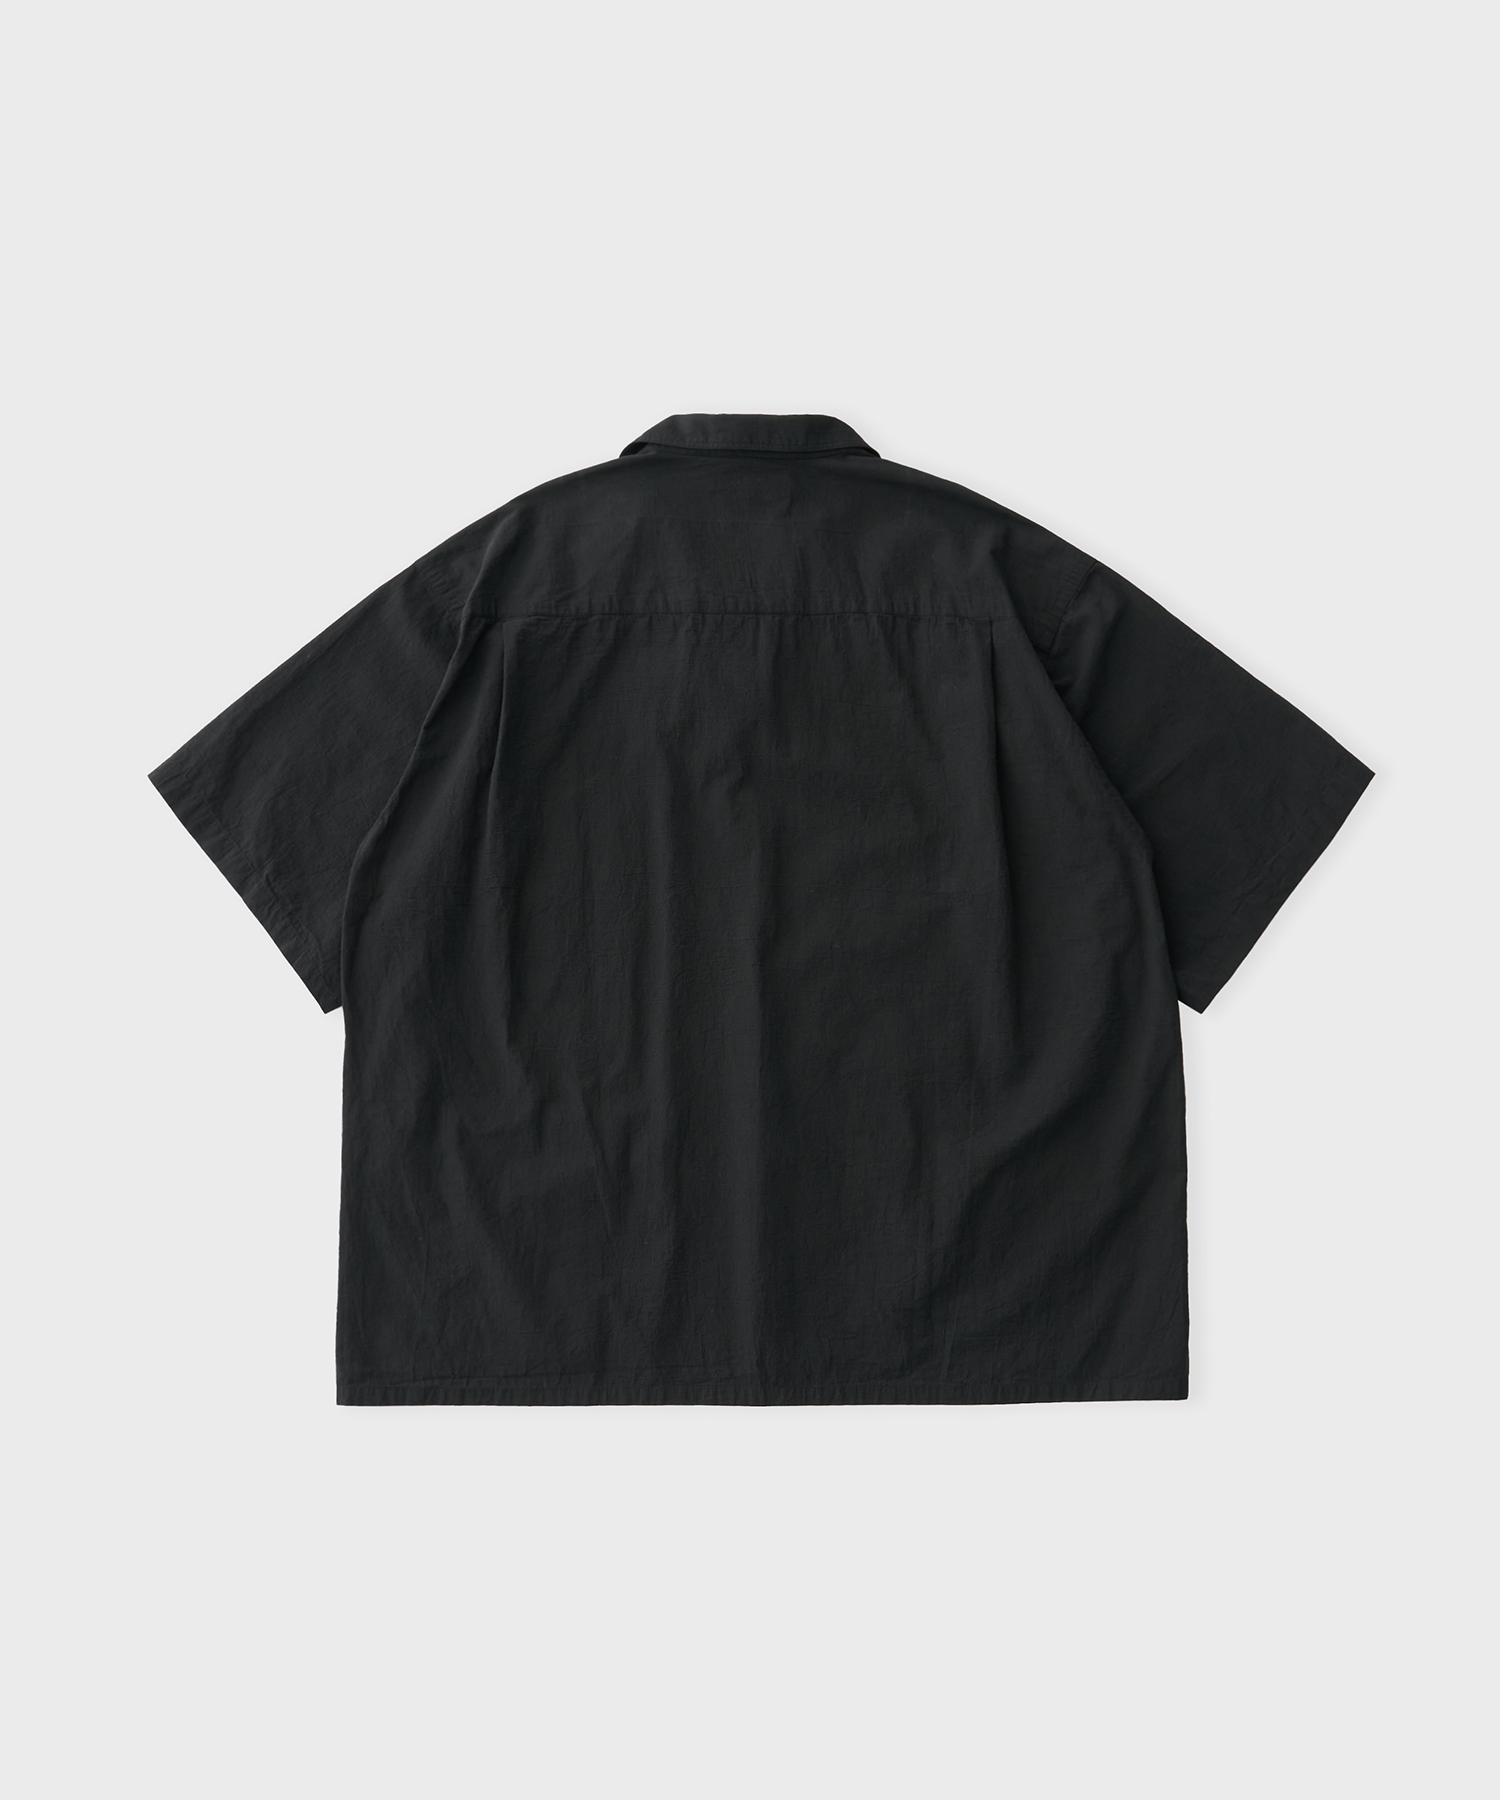 Buddy Shirt (Black)